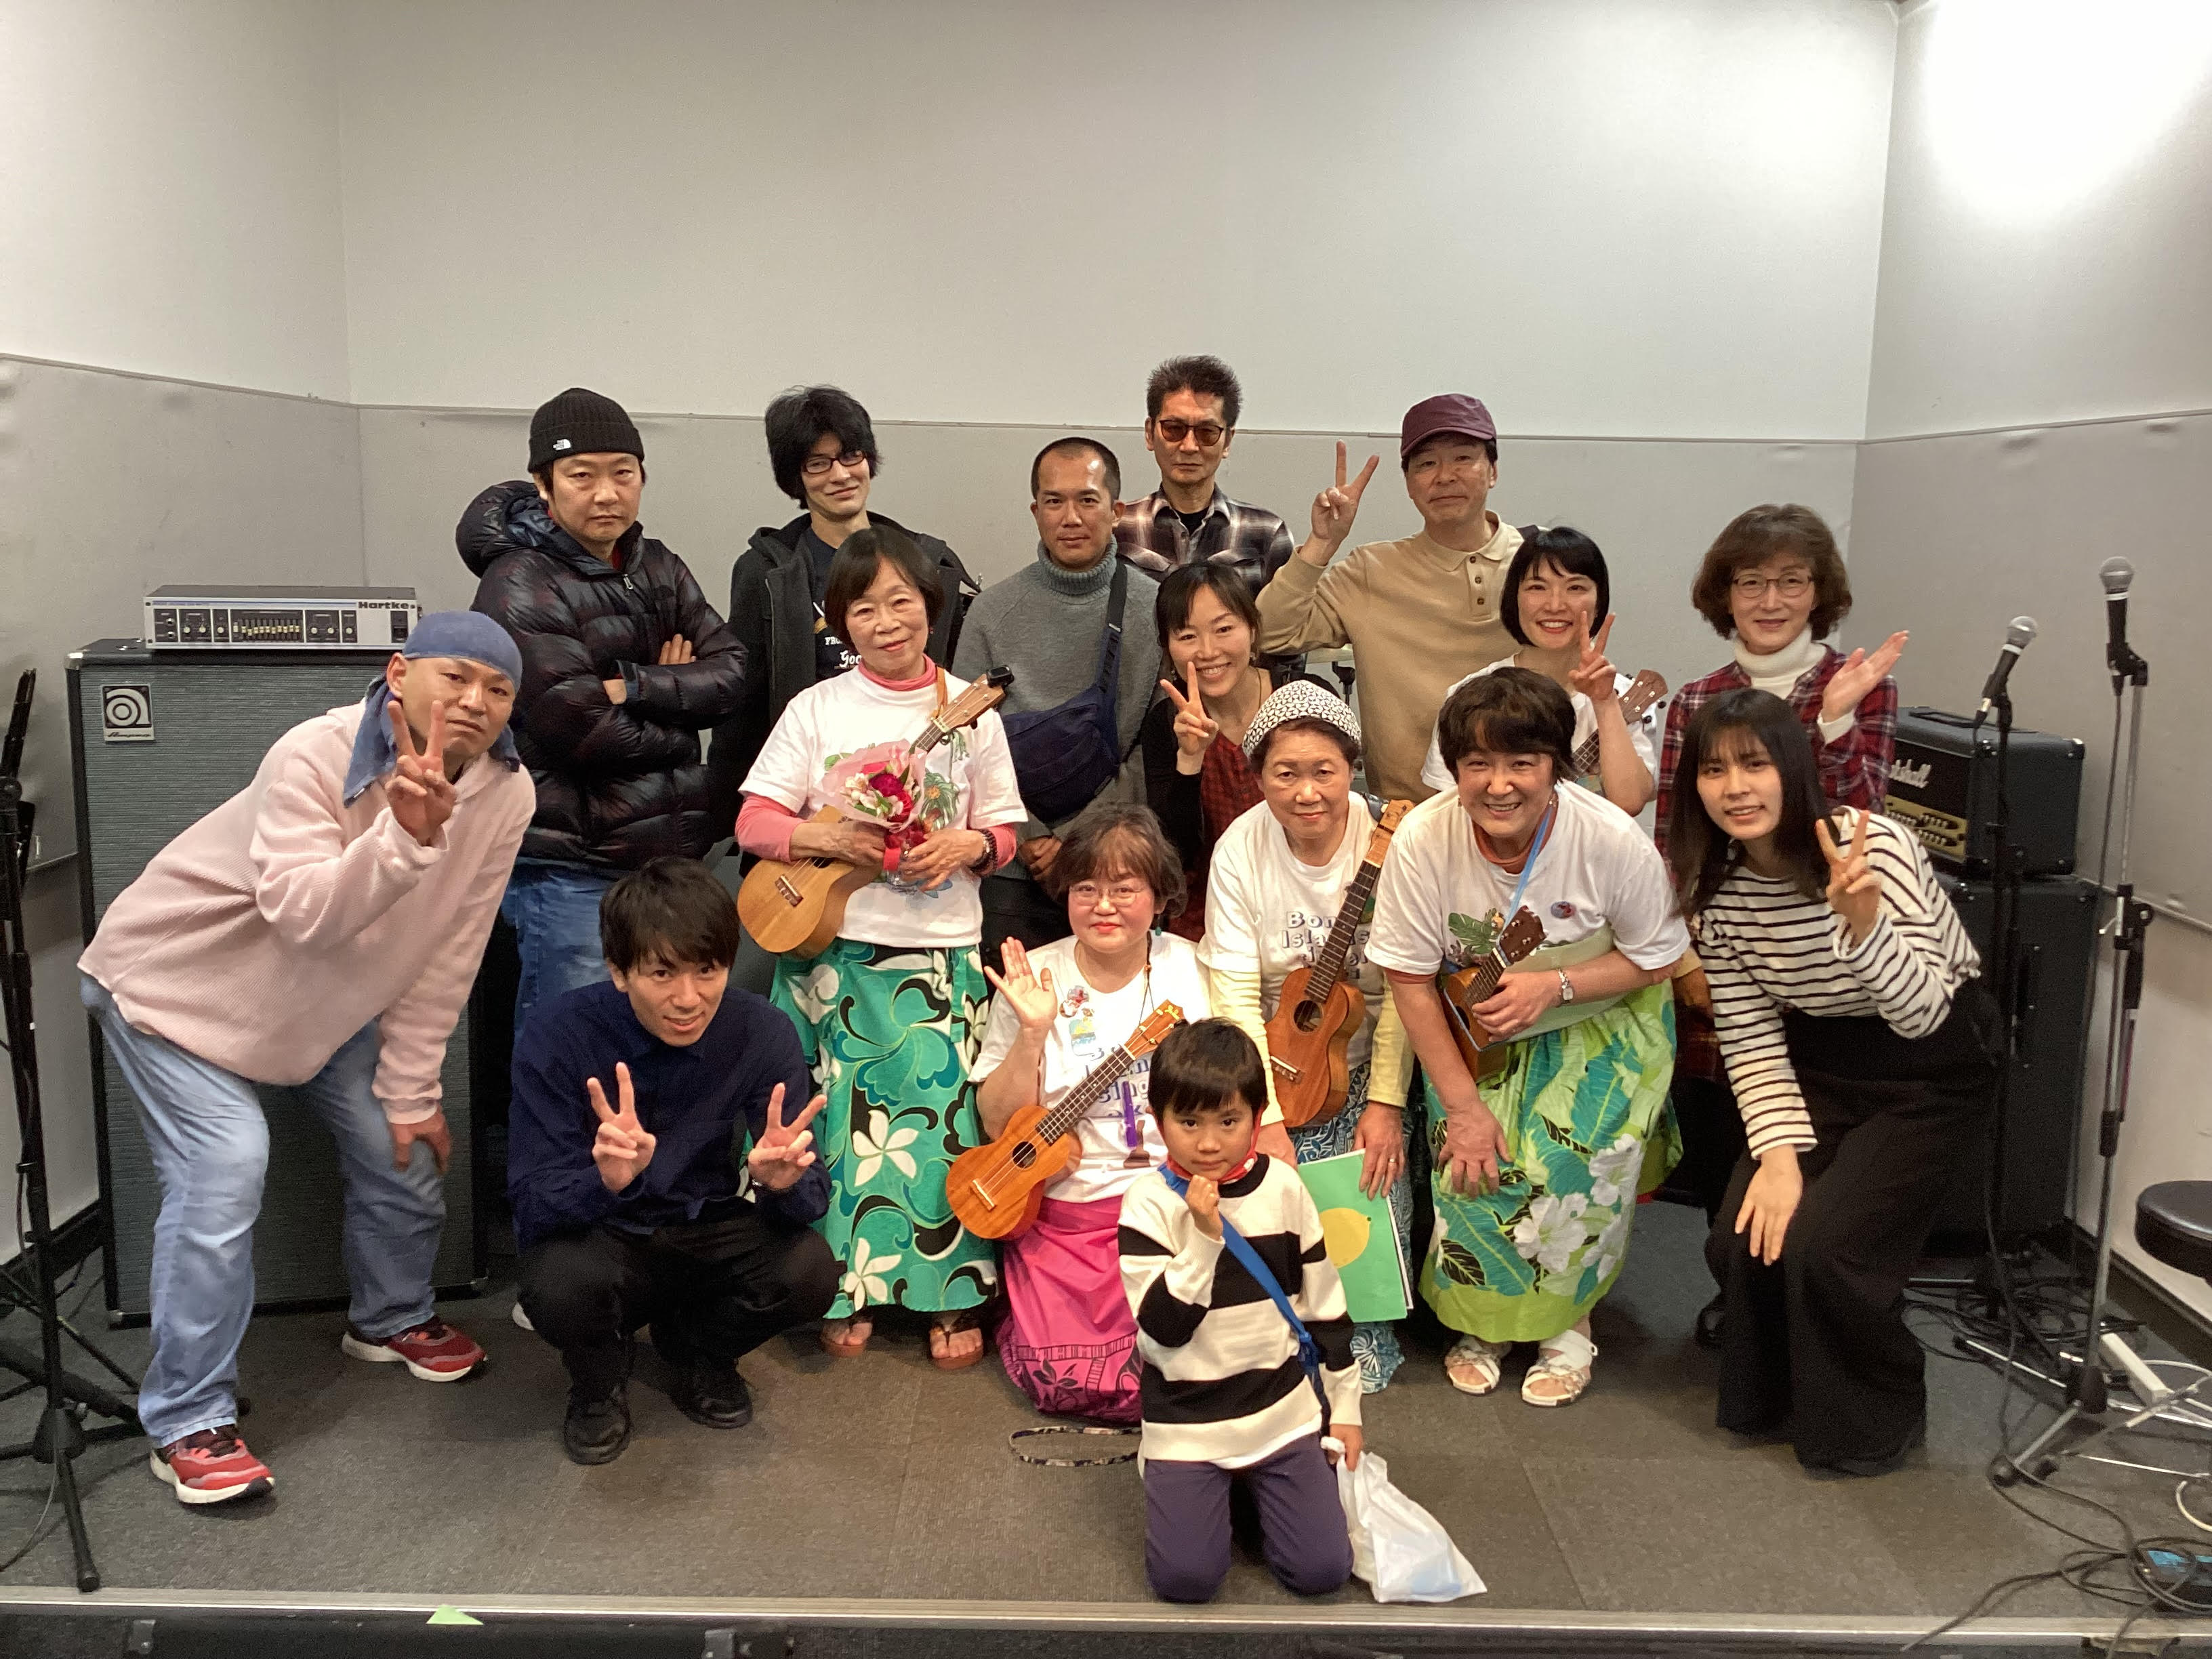 こんにちは！アコパラ店ライブ最後の開催レポートです。大日店の店ライブにご出演いただいた皆さま、素敵な演奏をありがとうございました！またのイベントご参加をお待ちしております♪ 下記出番順で掲載しております。 CONTENTSKeyboard-Sunaおおいしオトニノ森 正樹Yukinoko180-On […]